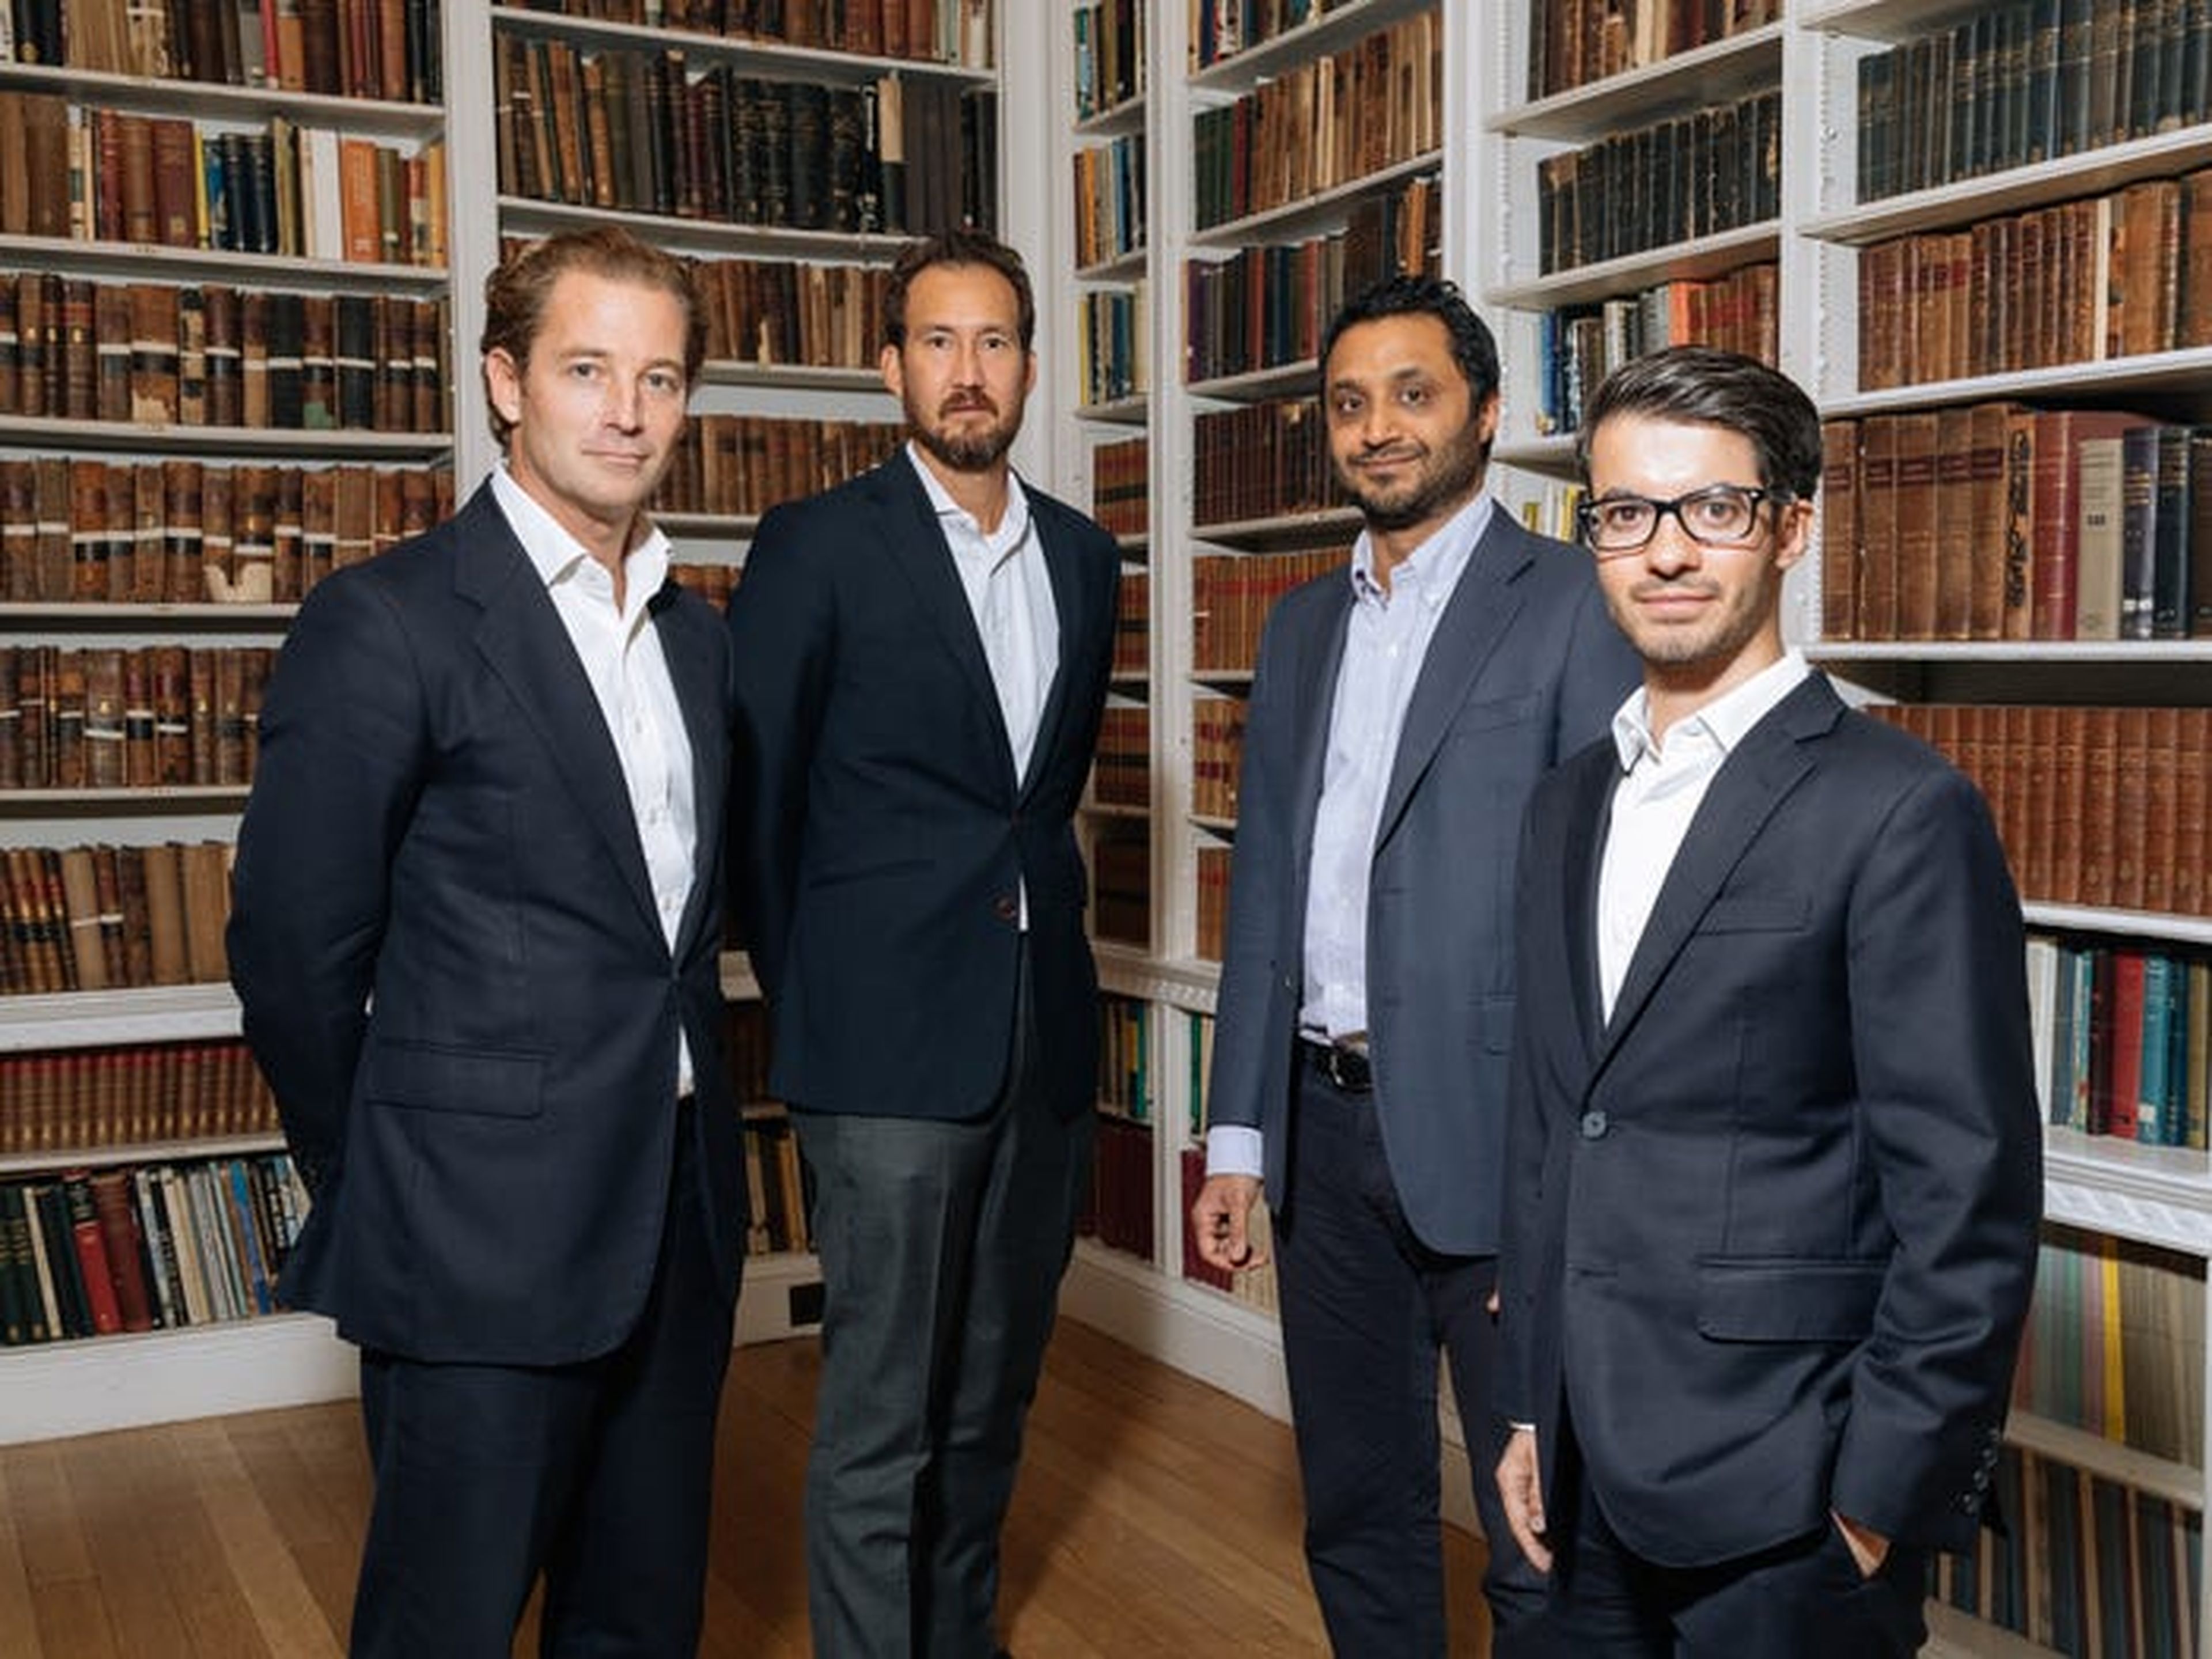 Fundadores y ejecutivos de PrimaryBid, de izquierda a derecha: James Deal, Eric Low, Anand Samabsivan y Kieran D'Silva.